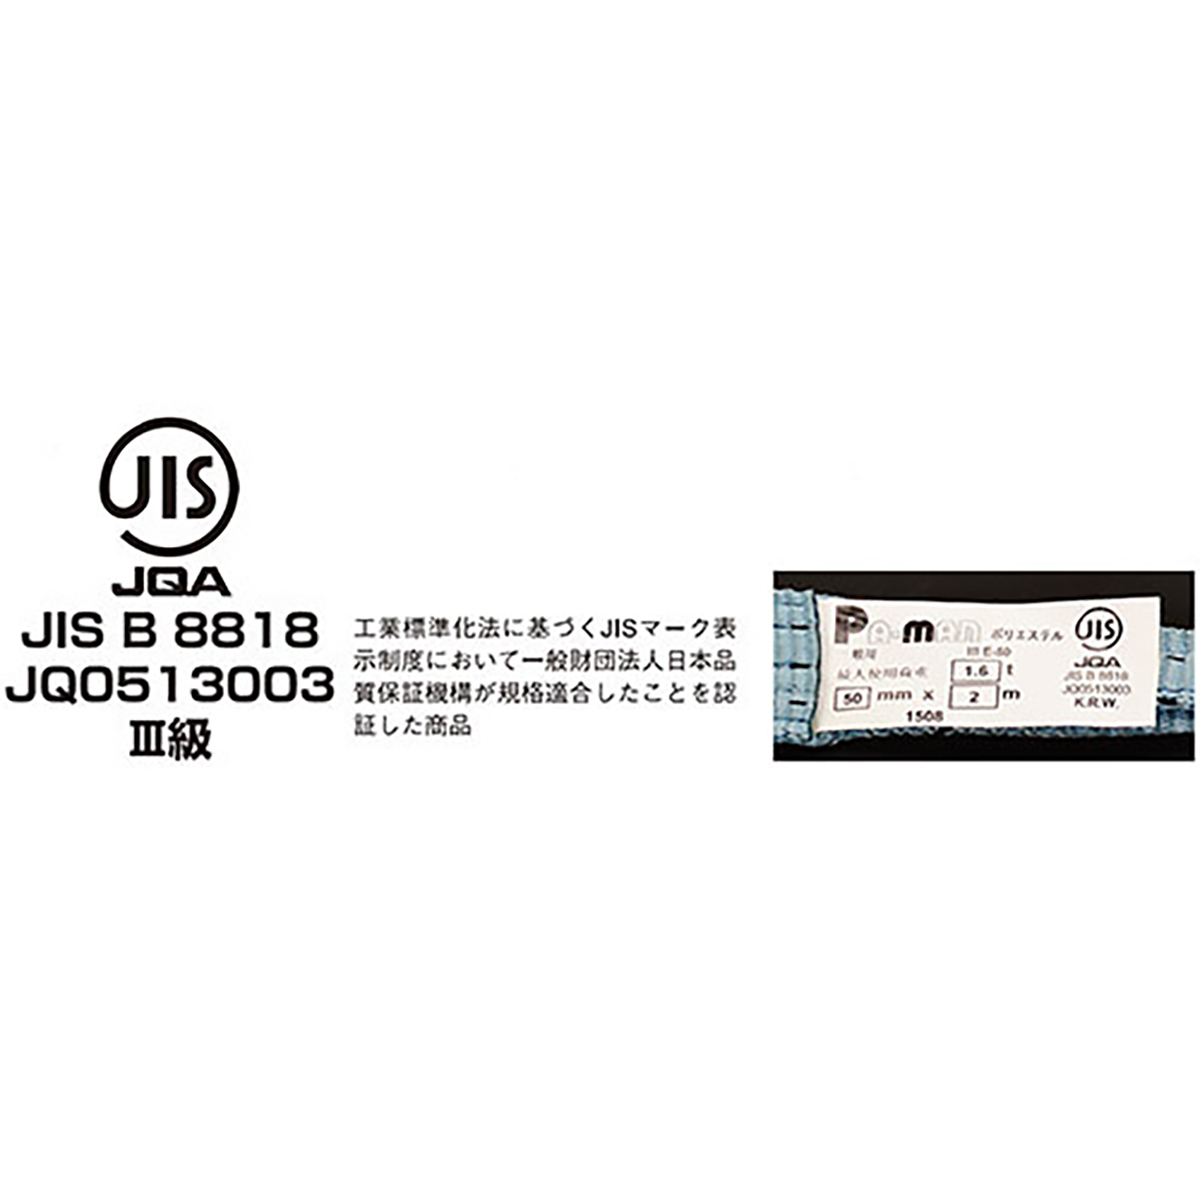 ポリベルトスリング JIS III級 ソフト面付 巾50mm 6m 1本